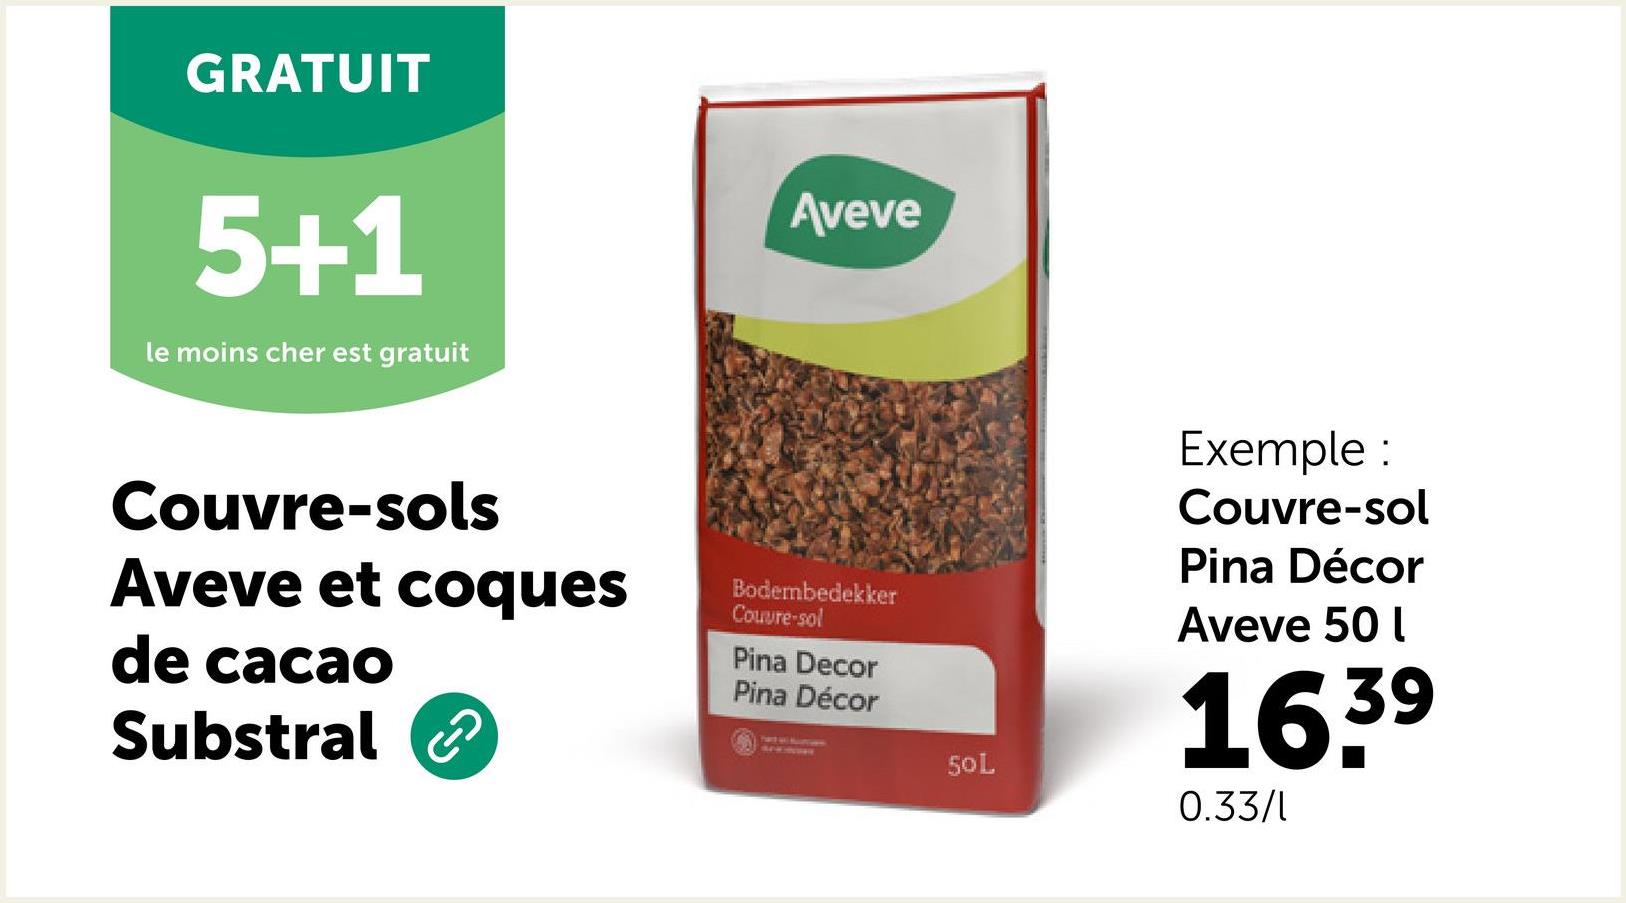 GRATUIT
5+1
le moins cher est gratuit
Aveve
Couvre-sols
Aveve et coques
de cacao
Substral
Bodembedekker
Couvre-sol
Pina Decor
Pina Décor
50L
Exemple :
Couvre-sol
Pina Décor
Aveve 50 l
16.39
0.33/1